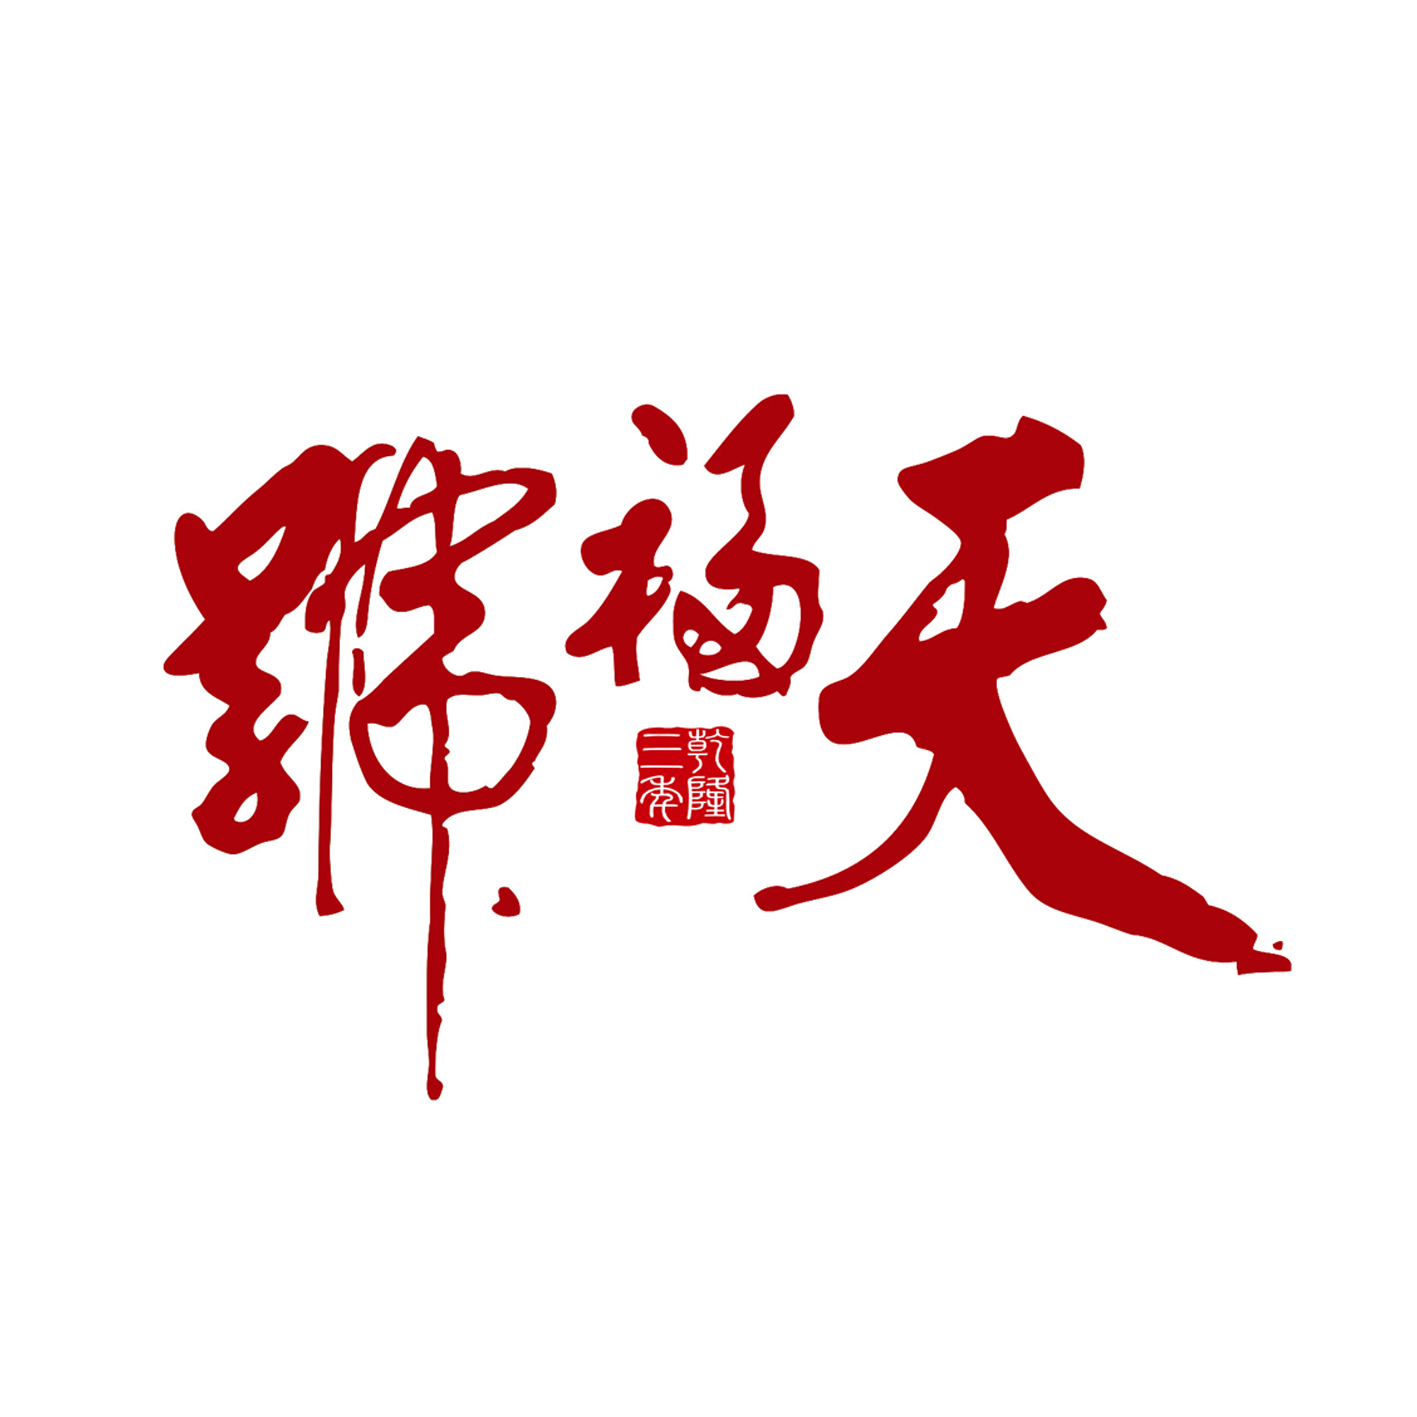 中國特許加盟展參展品牌-天福號